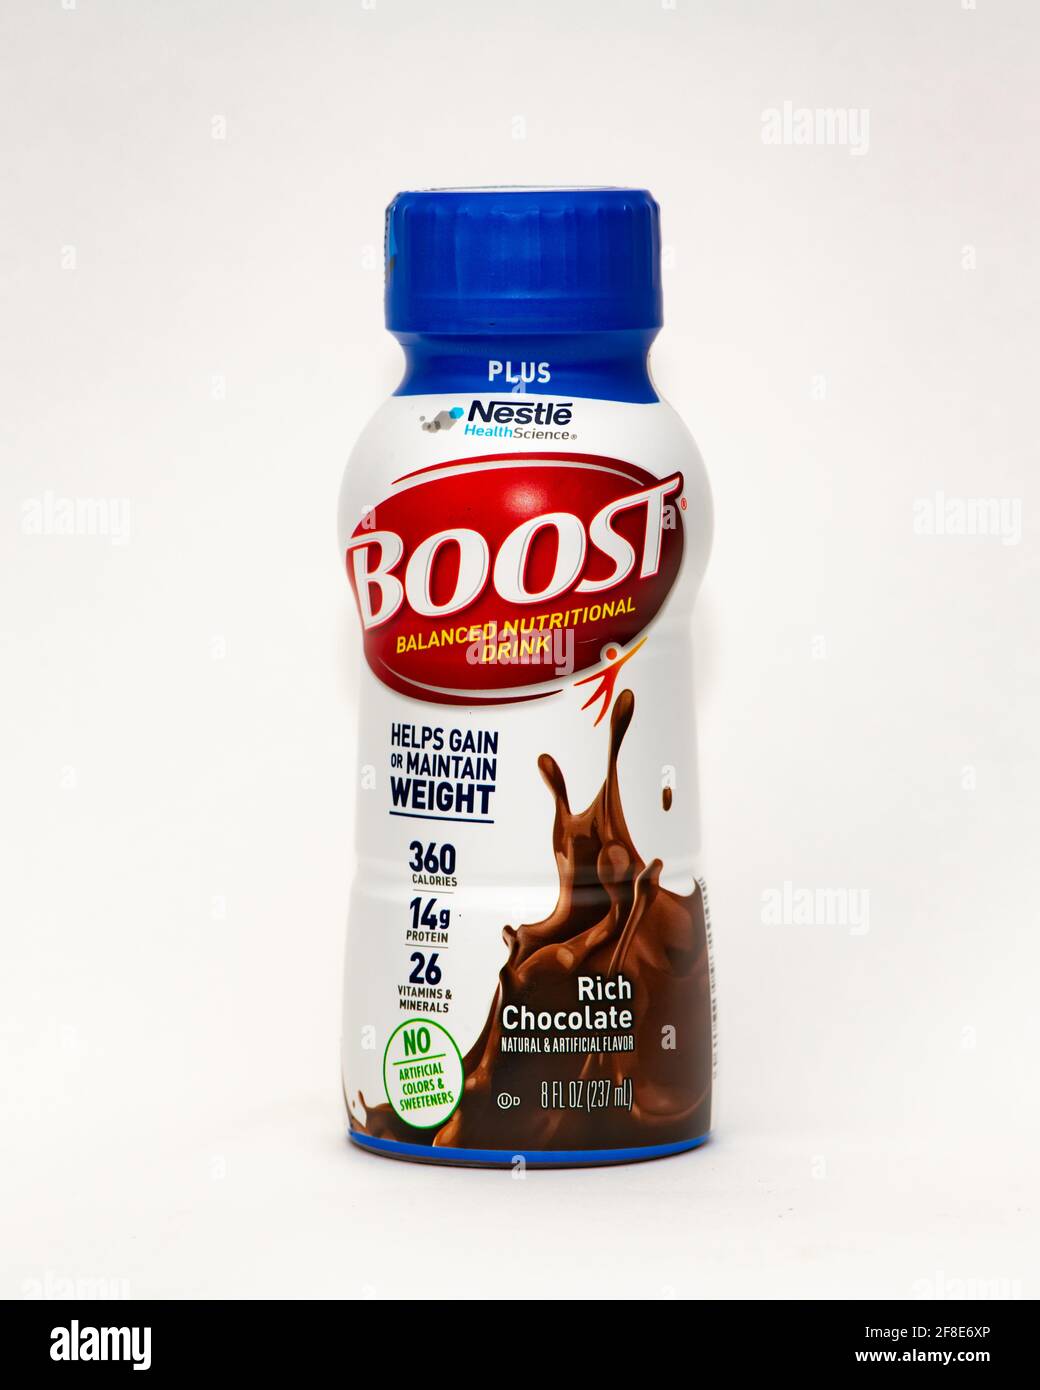 Una bottiglia di ricco cioccolato Boost Plus, una bevanda nutrizionale bilanciata che aiuta ad aumentare o mantenere il peso Foto Stock